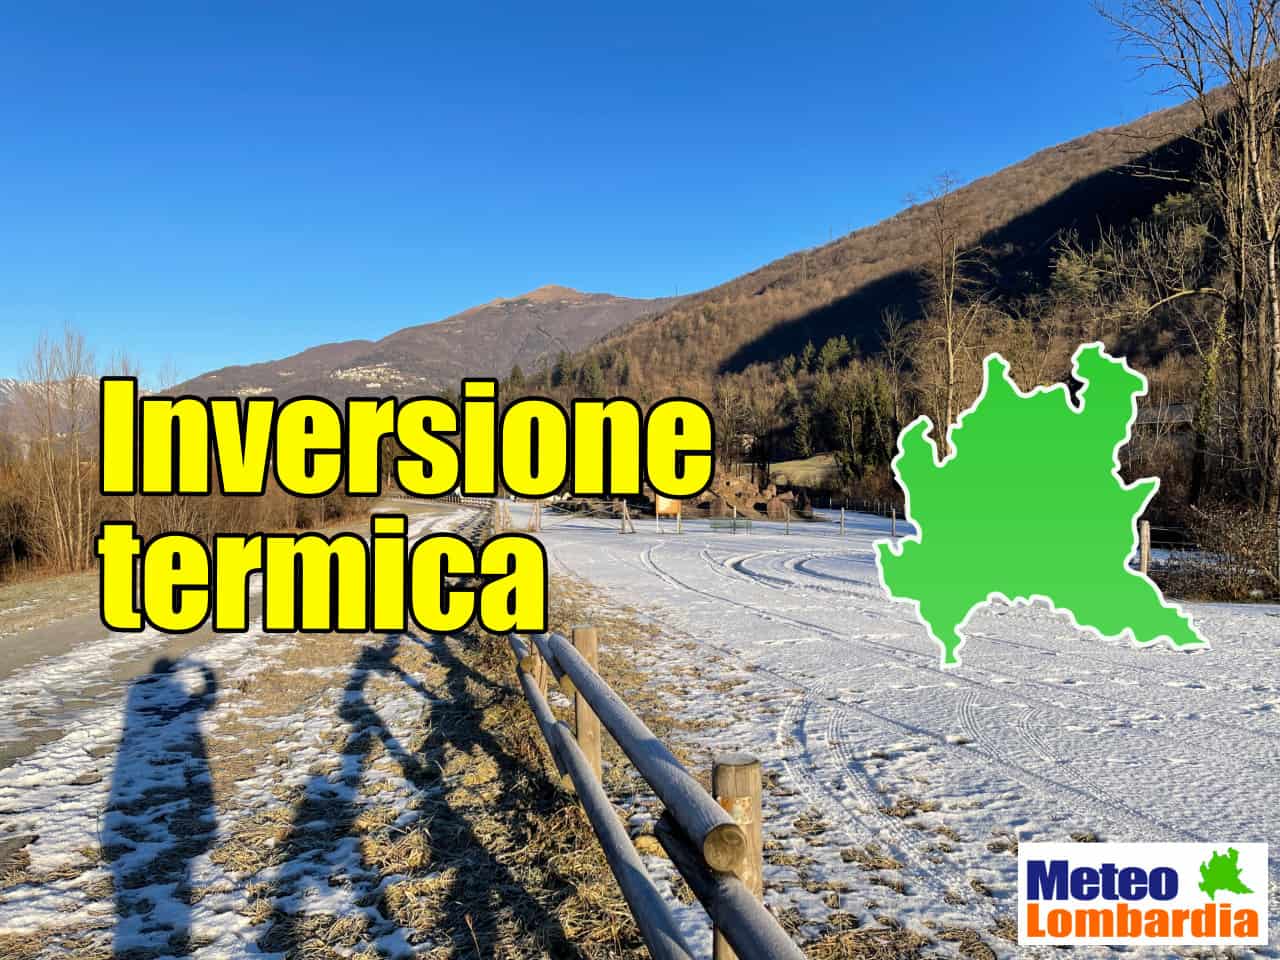 meteo lombardia con inversioni termiche - METEO Lombardia: GENNAIO da iInversioni Termiche a rischio Ondate di Freddo?